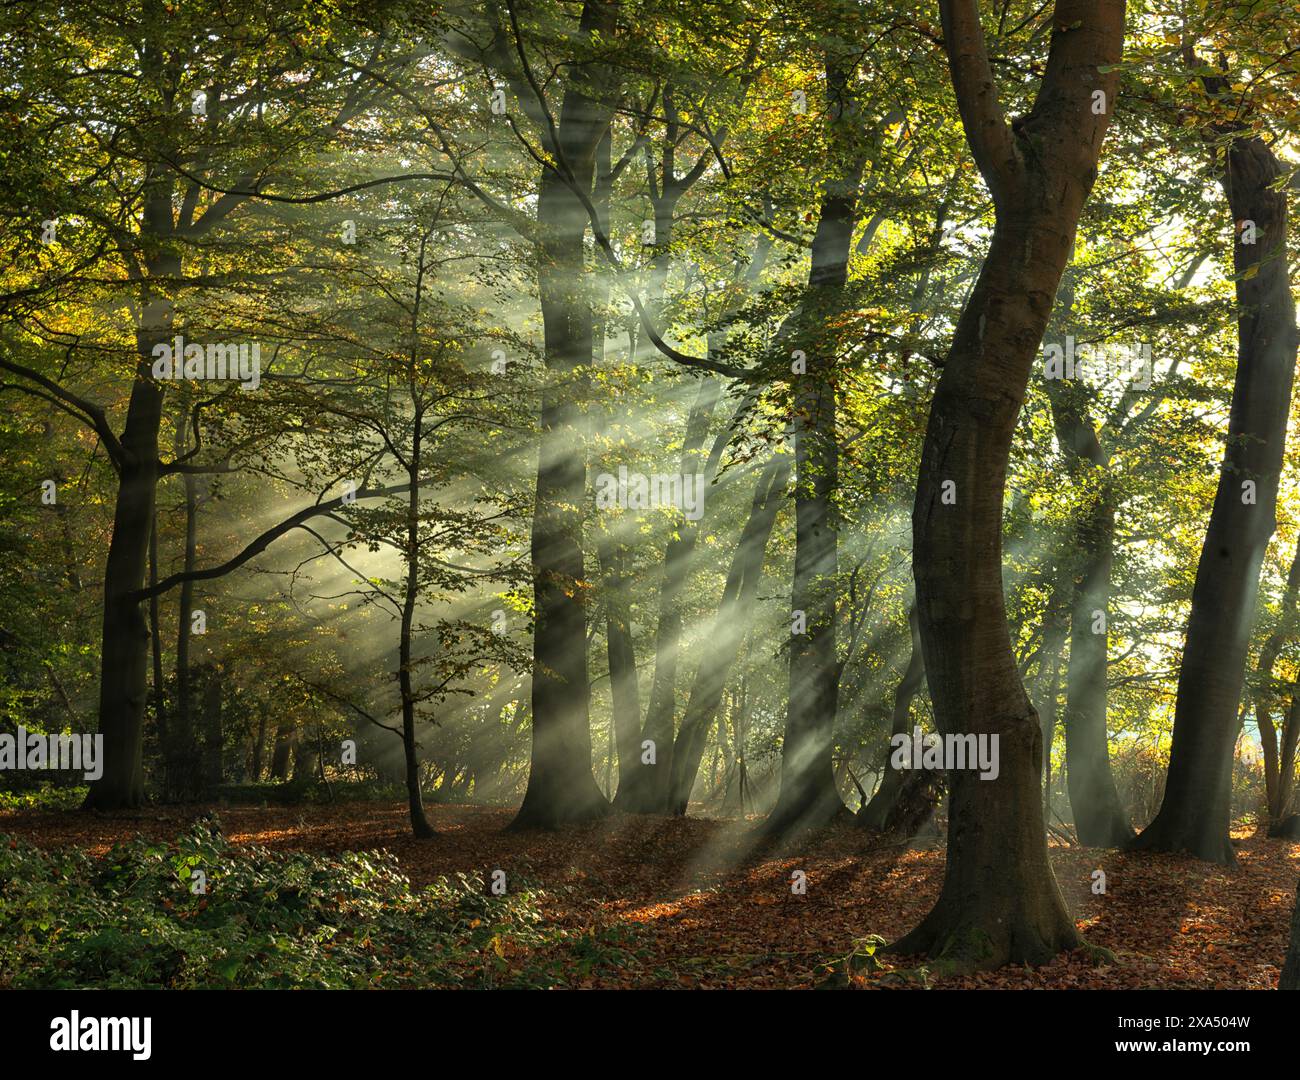 Sonnenstrahlen filtern durch einen ruhigen Wald, beleuchten den Nebel und zeigen das lebhafte Grün und das komplizierte Spiel von Licht und Schatten zwischen den Bäumen. Stockfoto